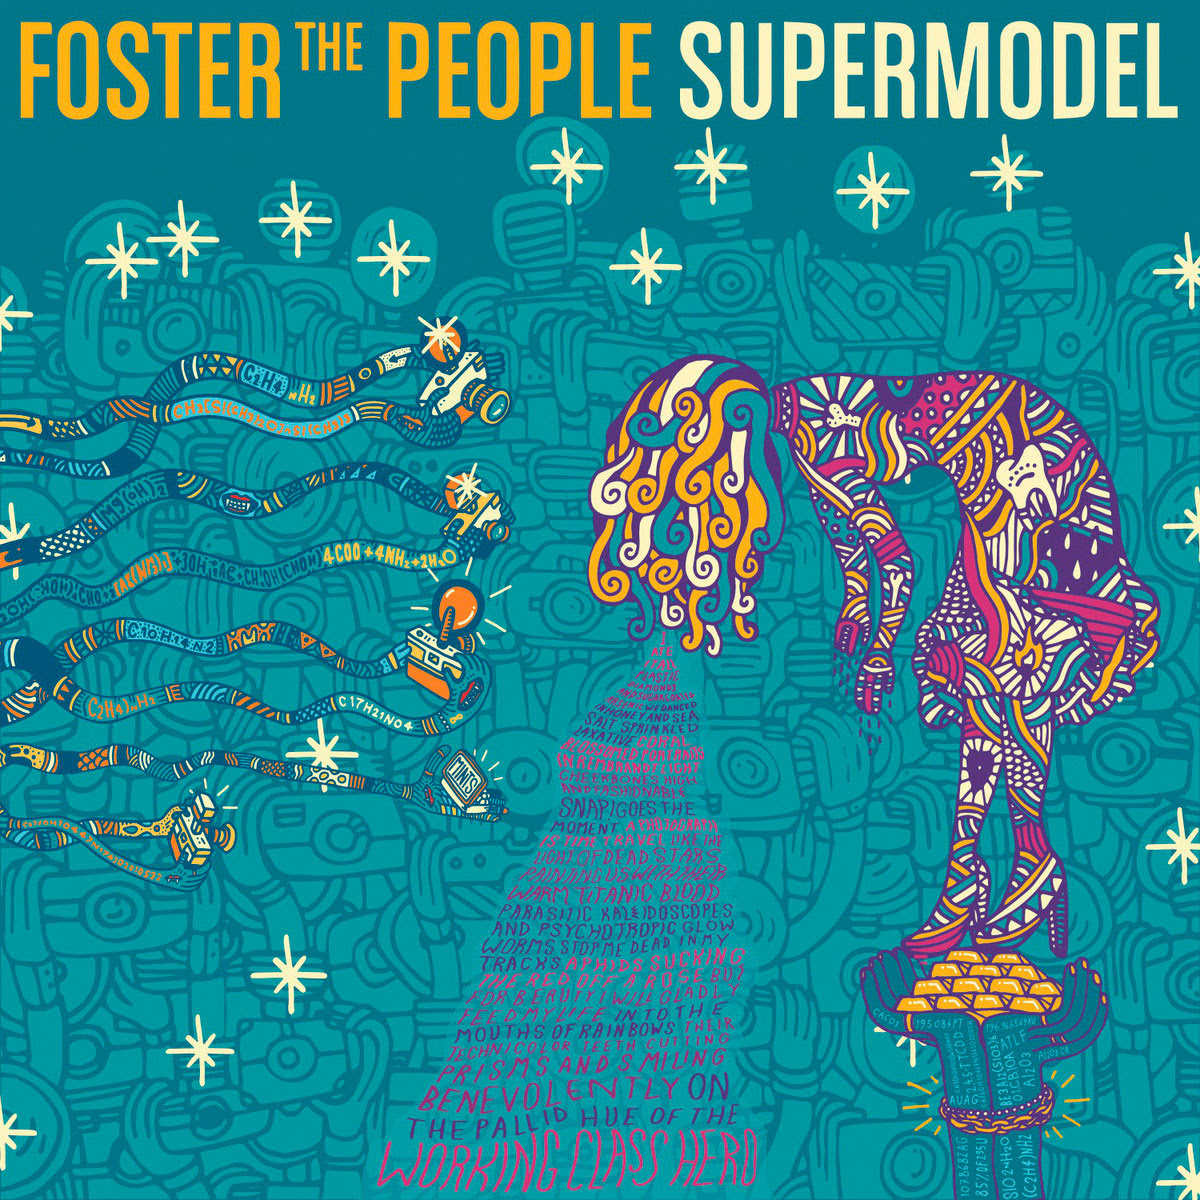 Portada del nuevo disco de Foster the People: Supermodel